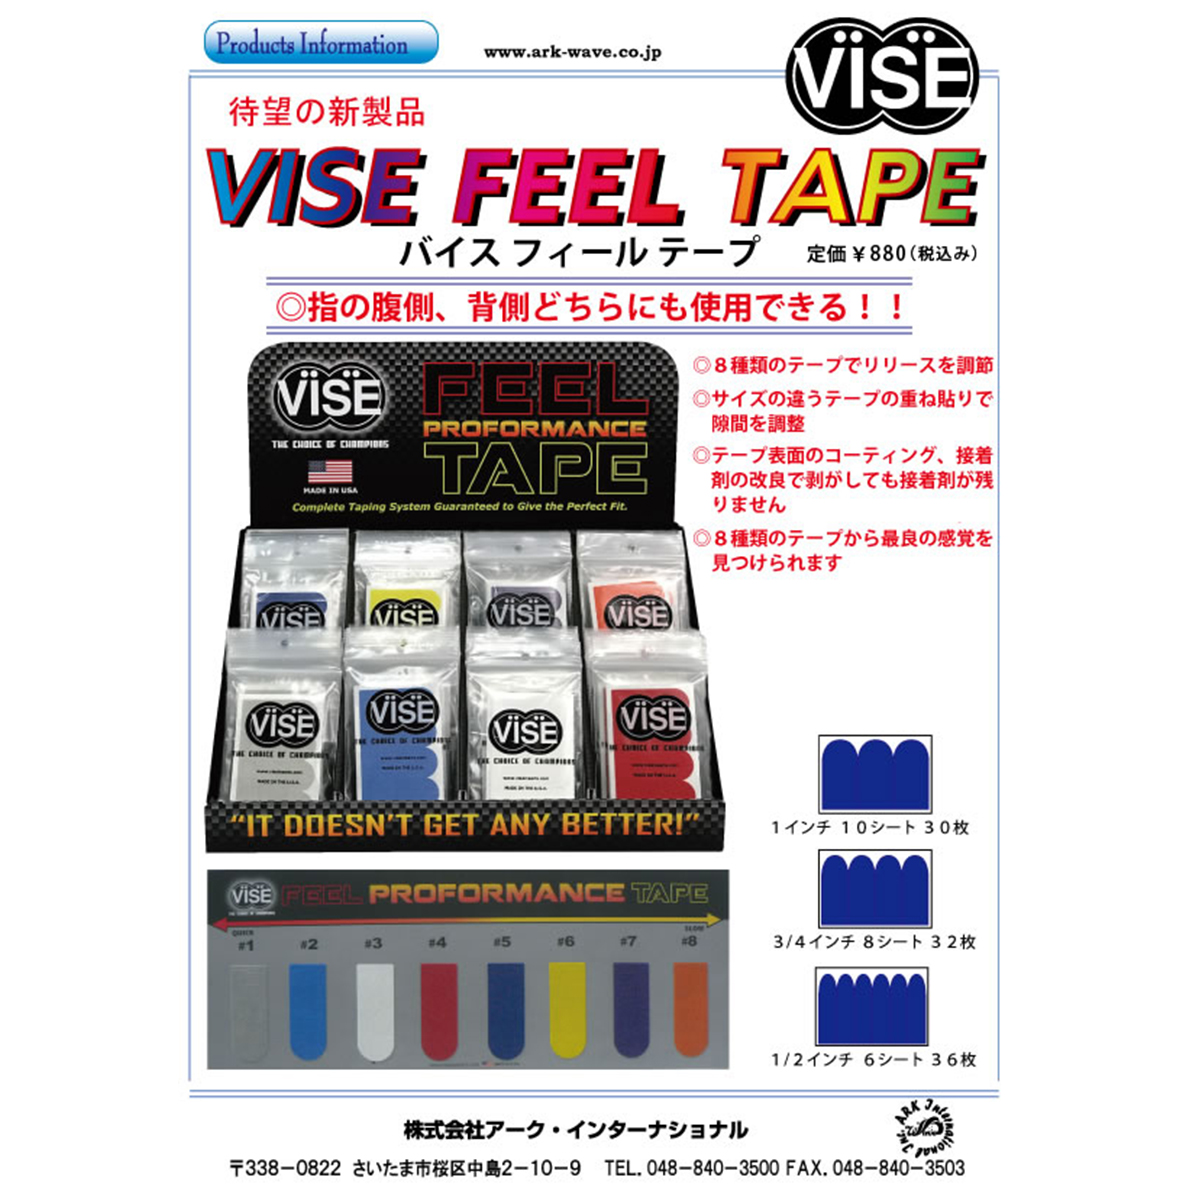 【12袋セット】VISE フィールテープ#7(紫色) - ウインドウを閉じる